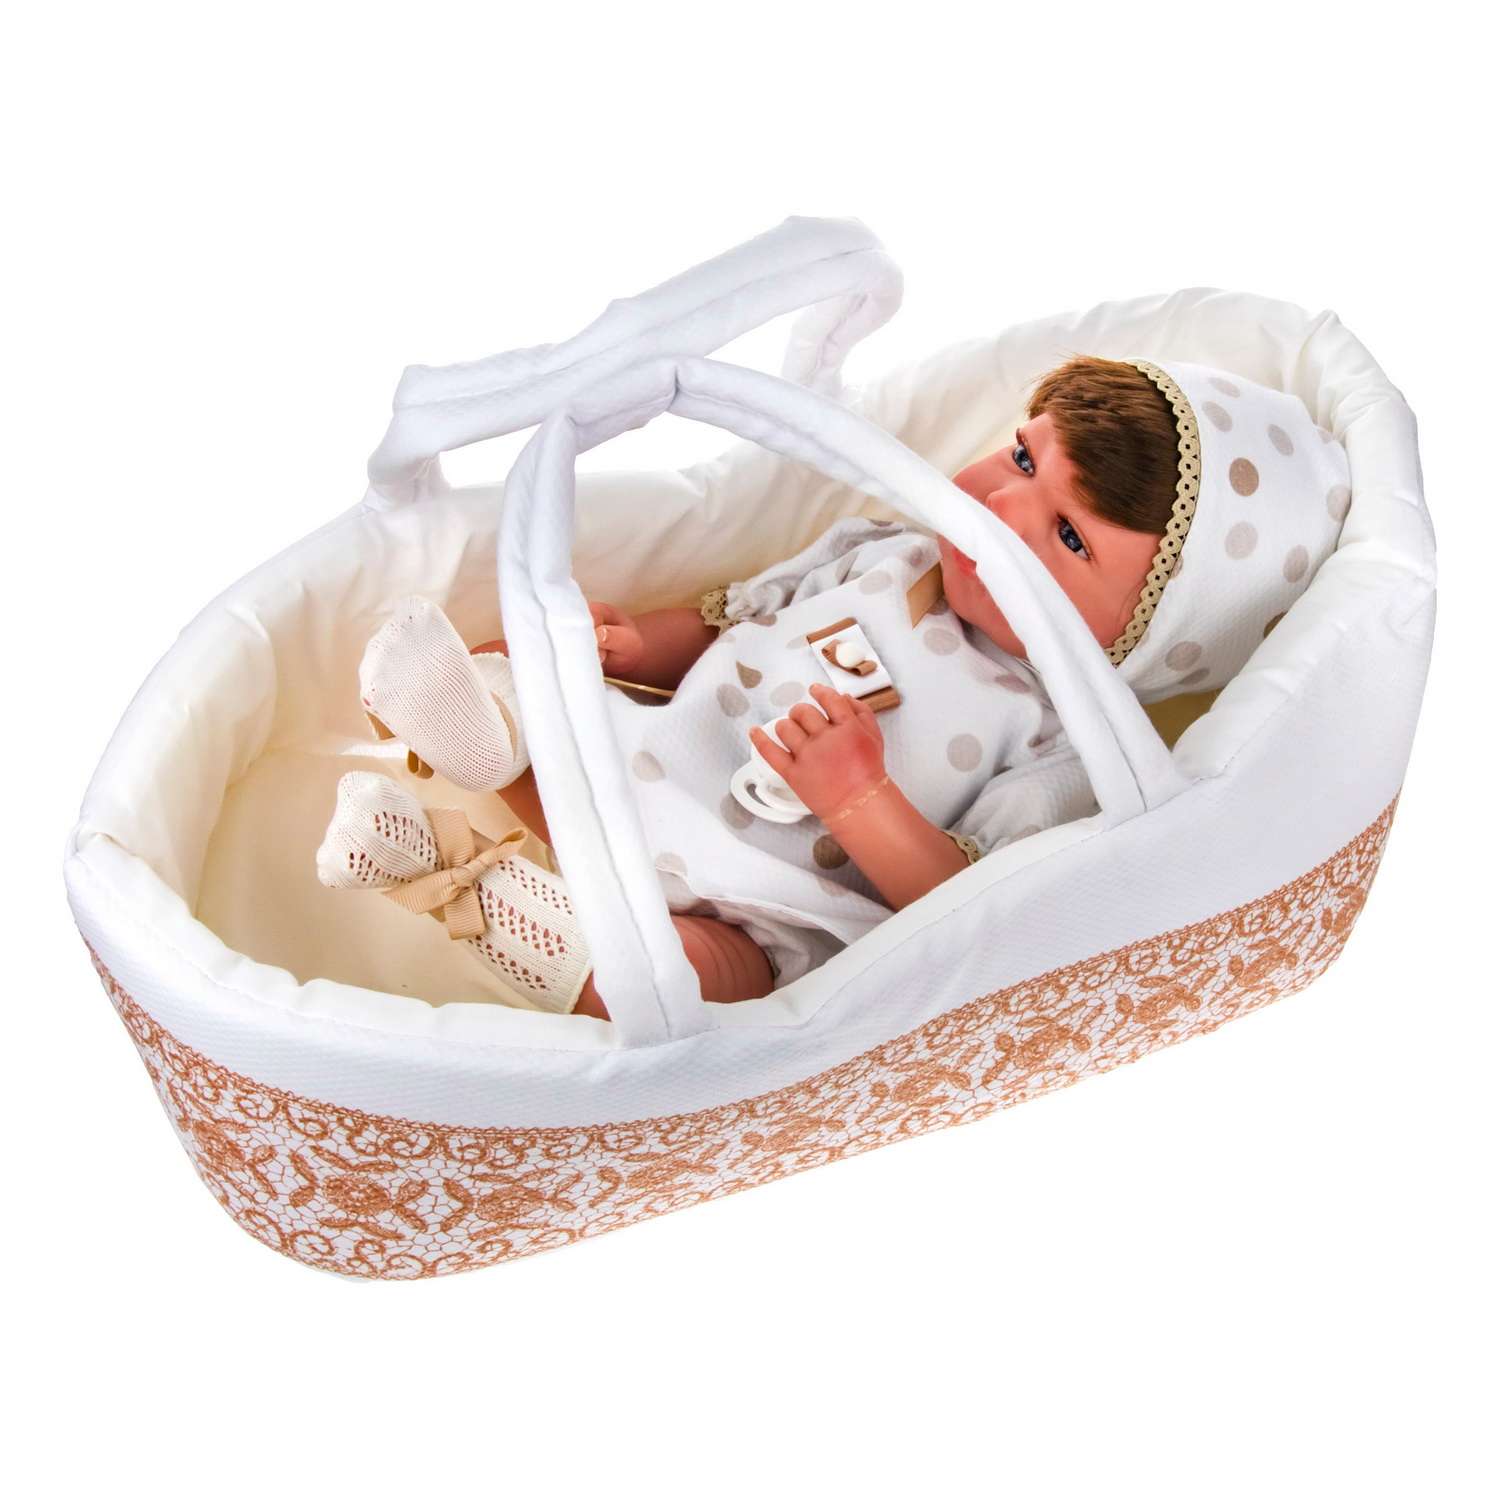 Кукла Arias ReBorns Candy реалистичный новорожденный пупс 40см Т17435 - фото 2